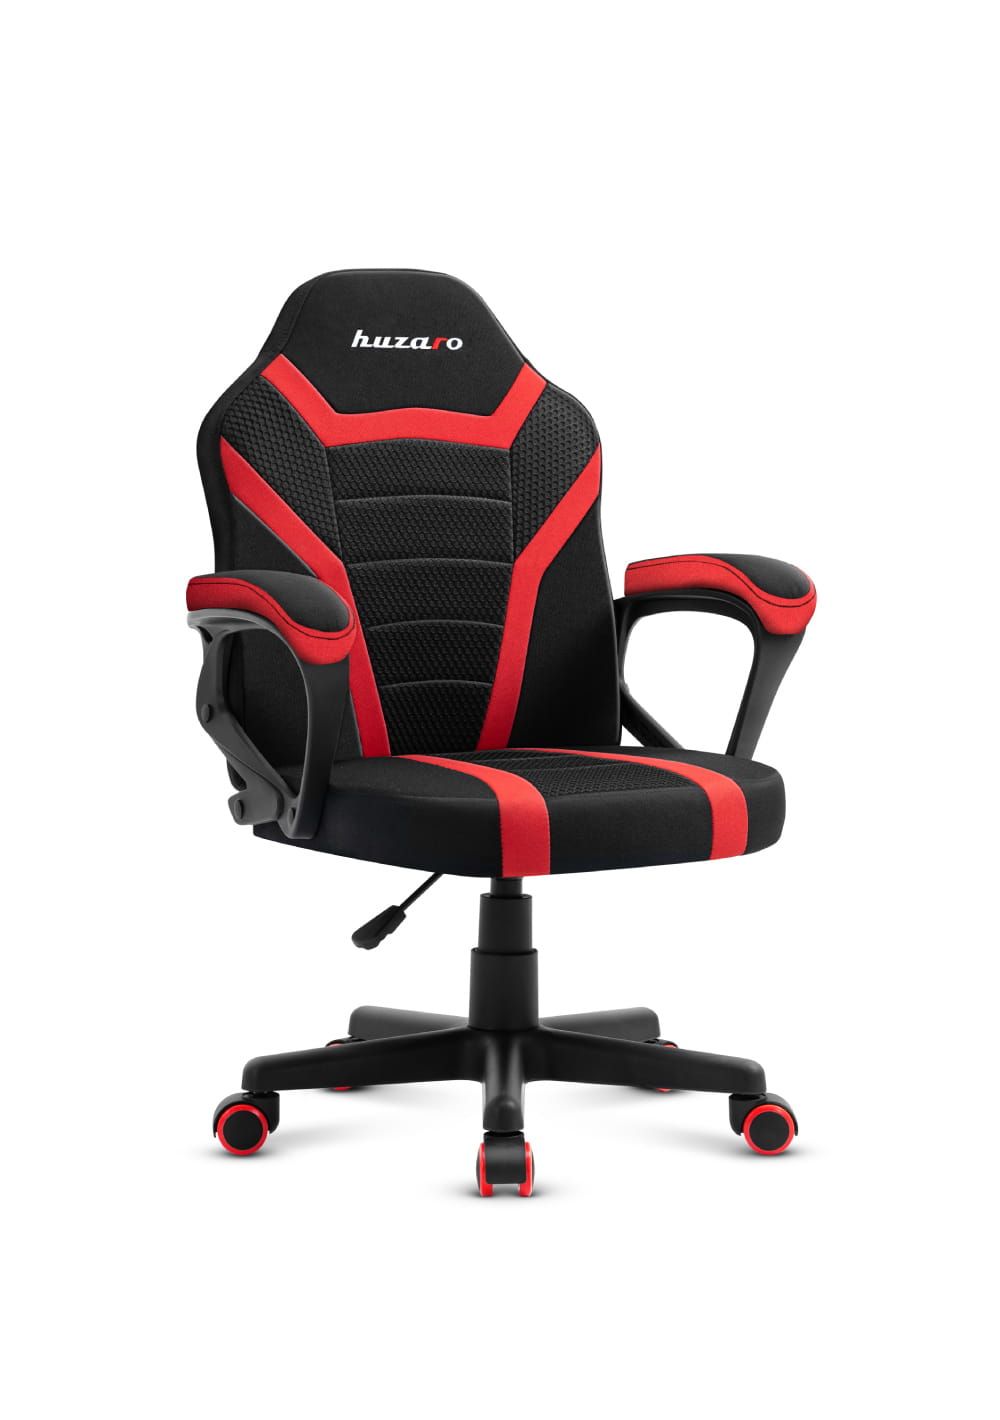 Gaming chair for children Huzaro Ranger 1.0 Red Mesh, black, red_1